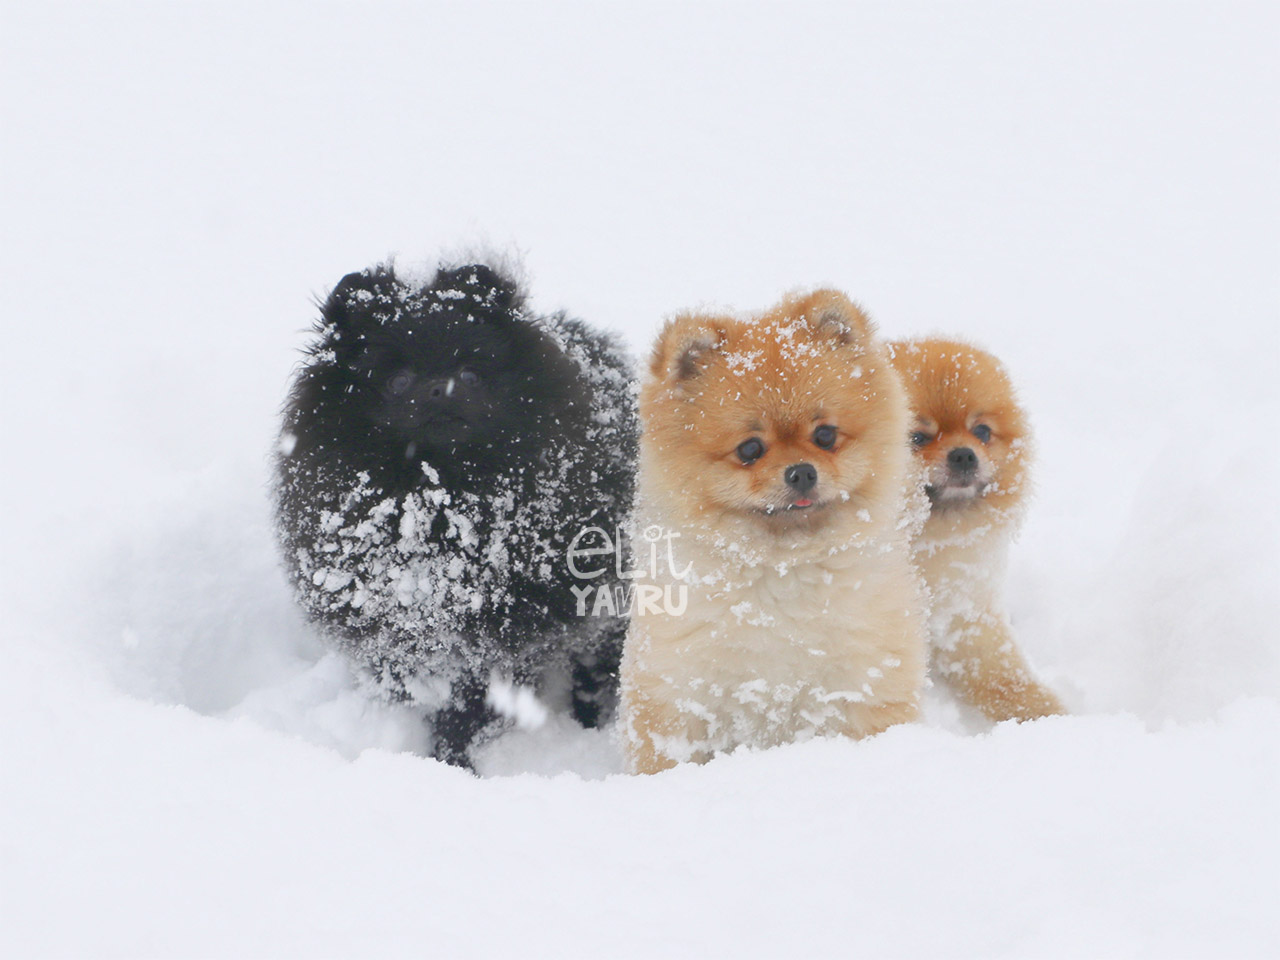 Elit Pomeranian yavrularımızın kar eğlencesi